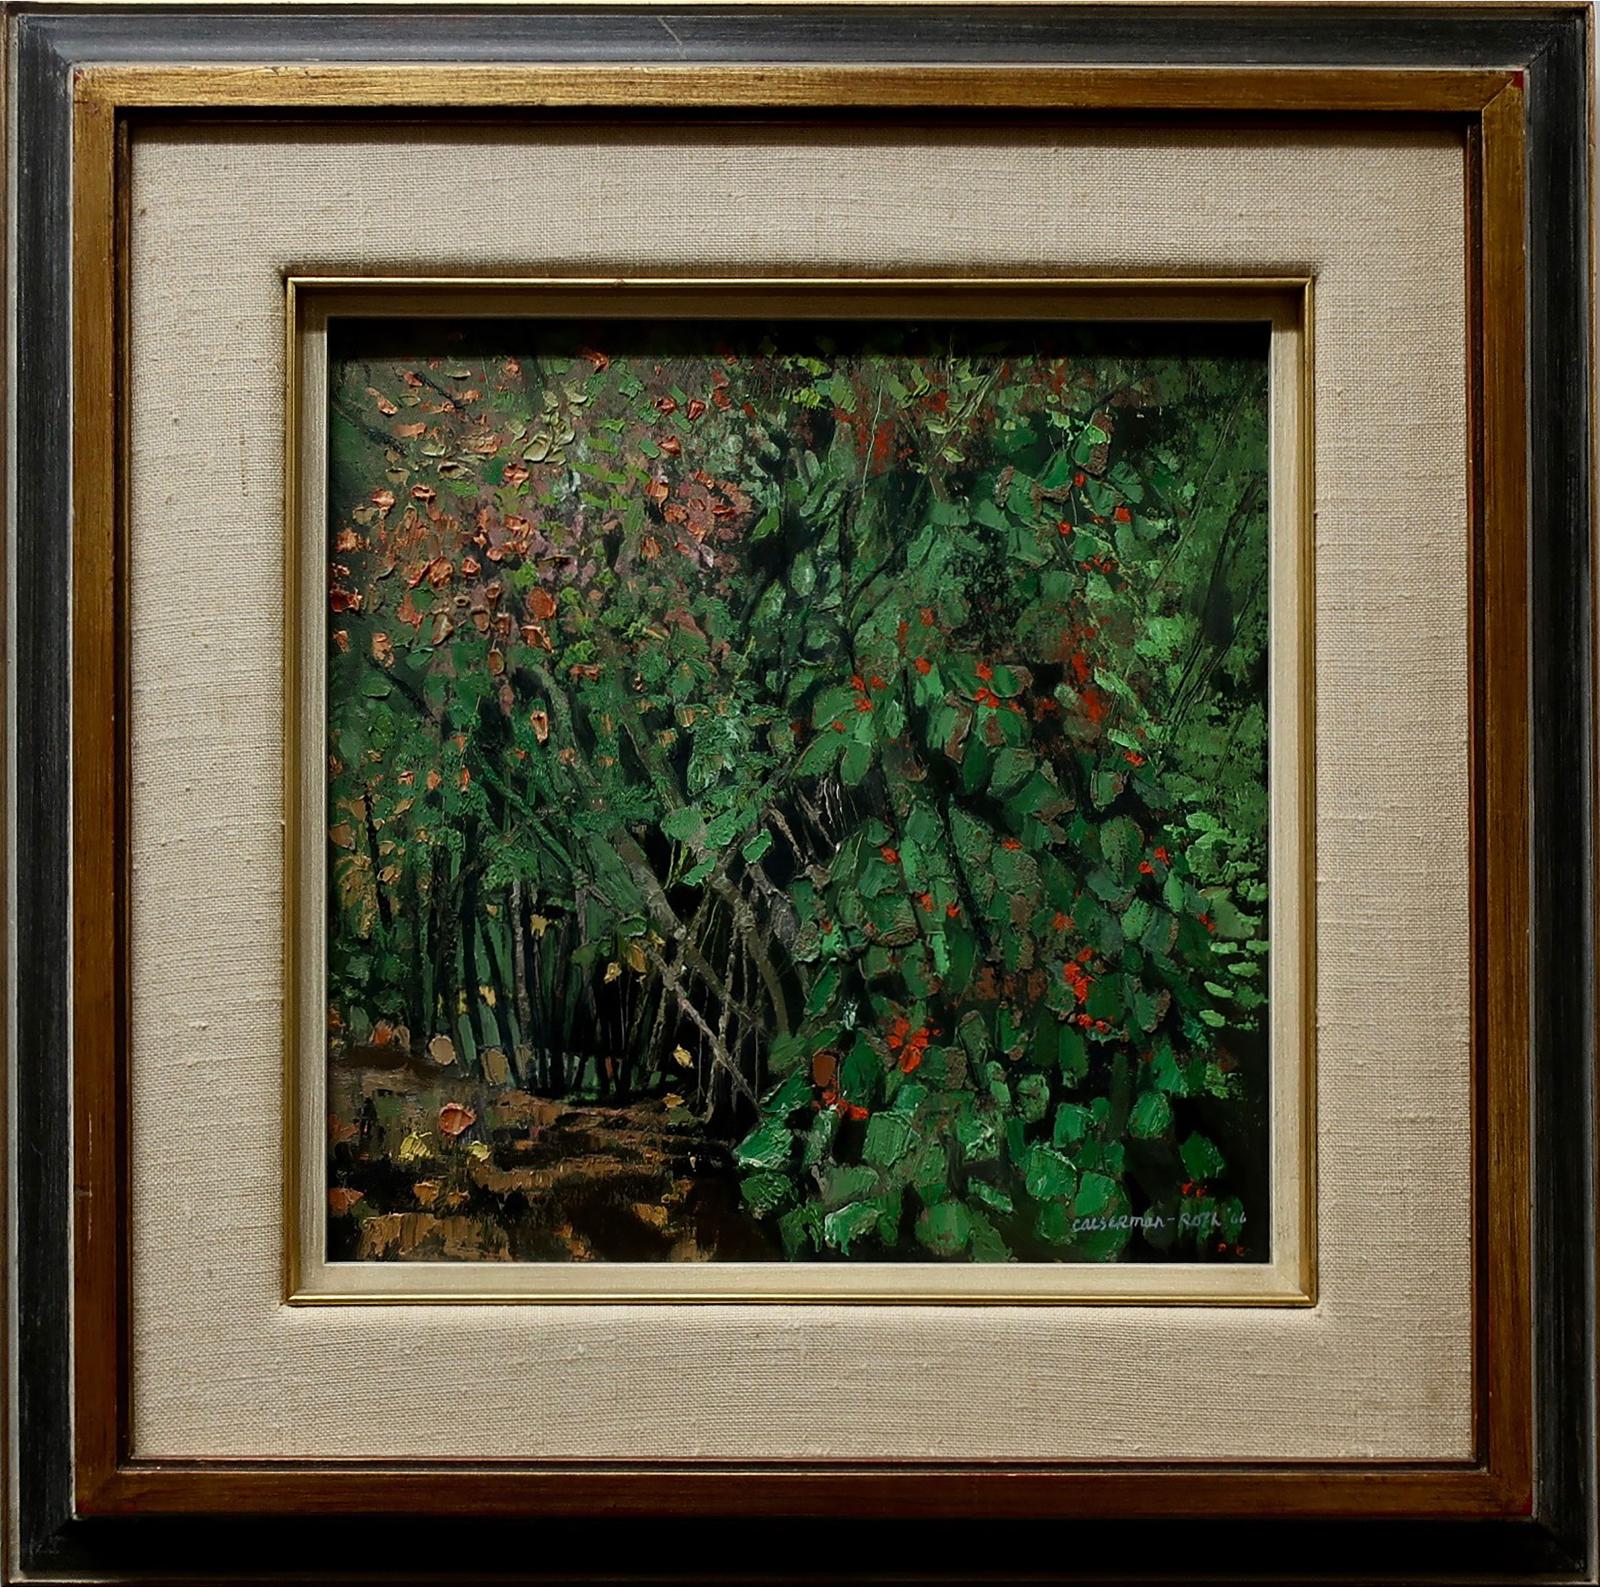 Ghitta Caiserman-Roth (1923-2005) - Landscape